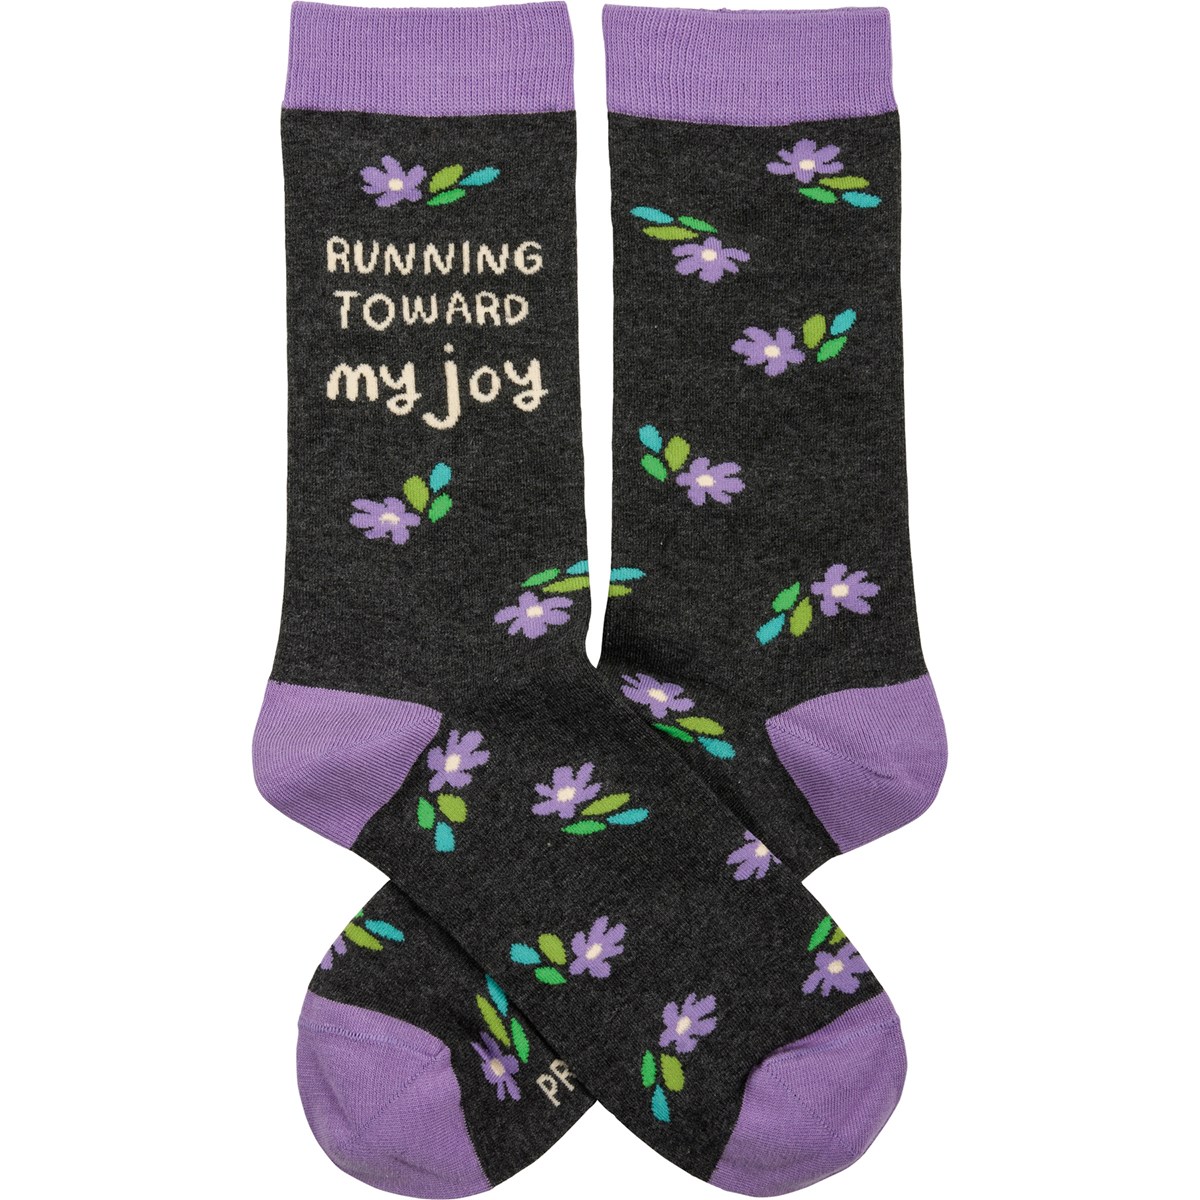 Running Toward My Joy Socks - Cotton, Nylon, Spandex